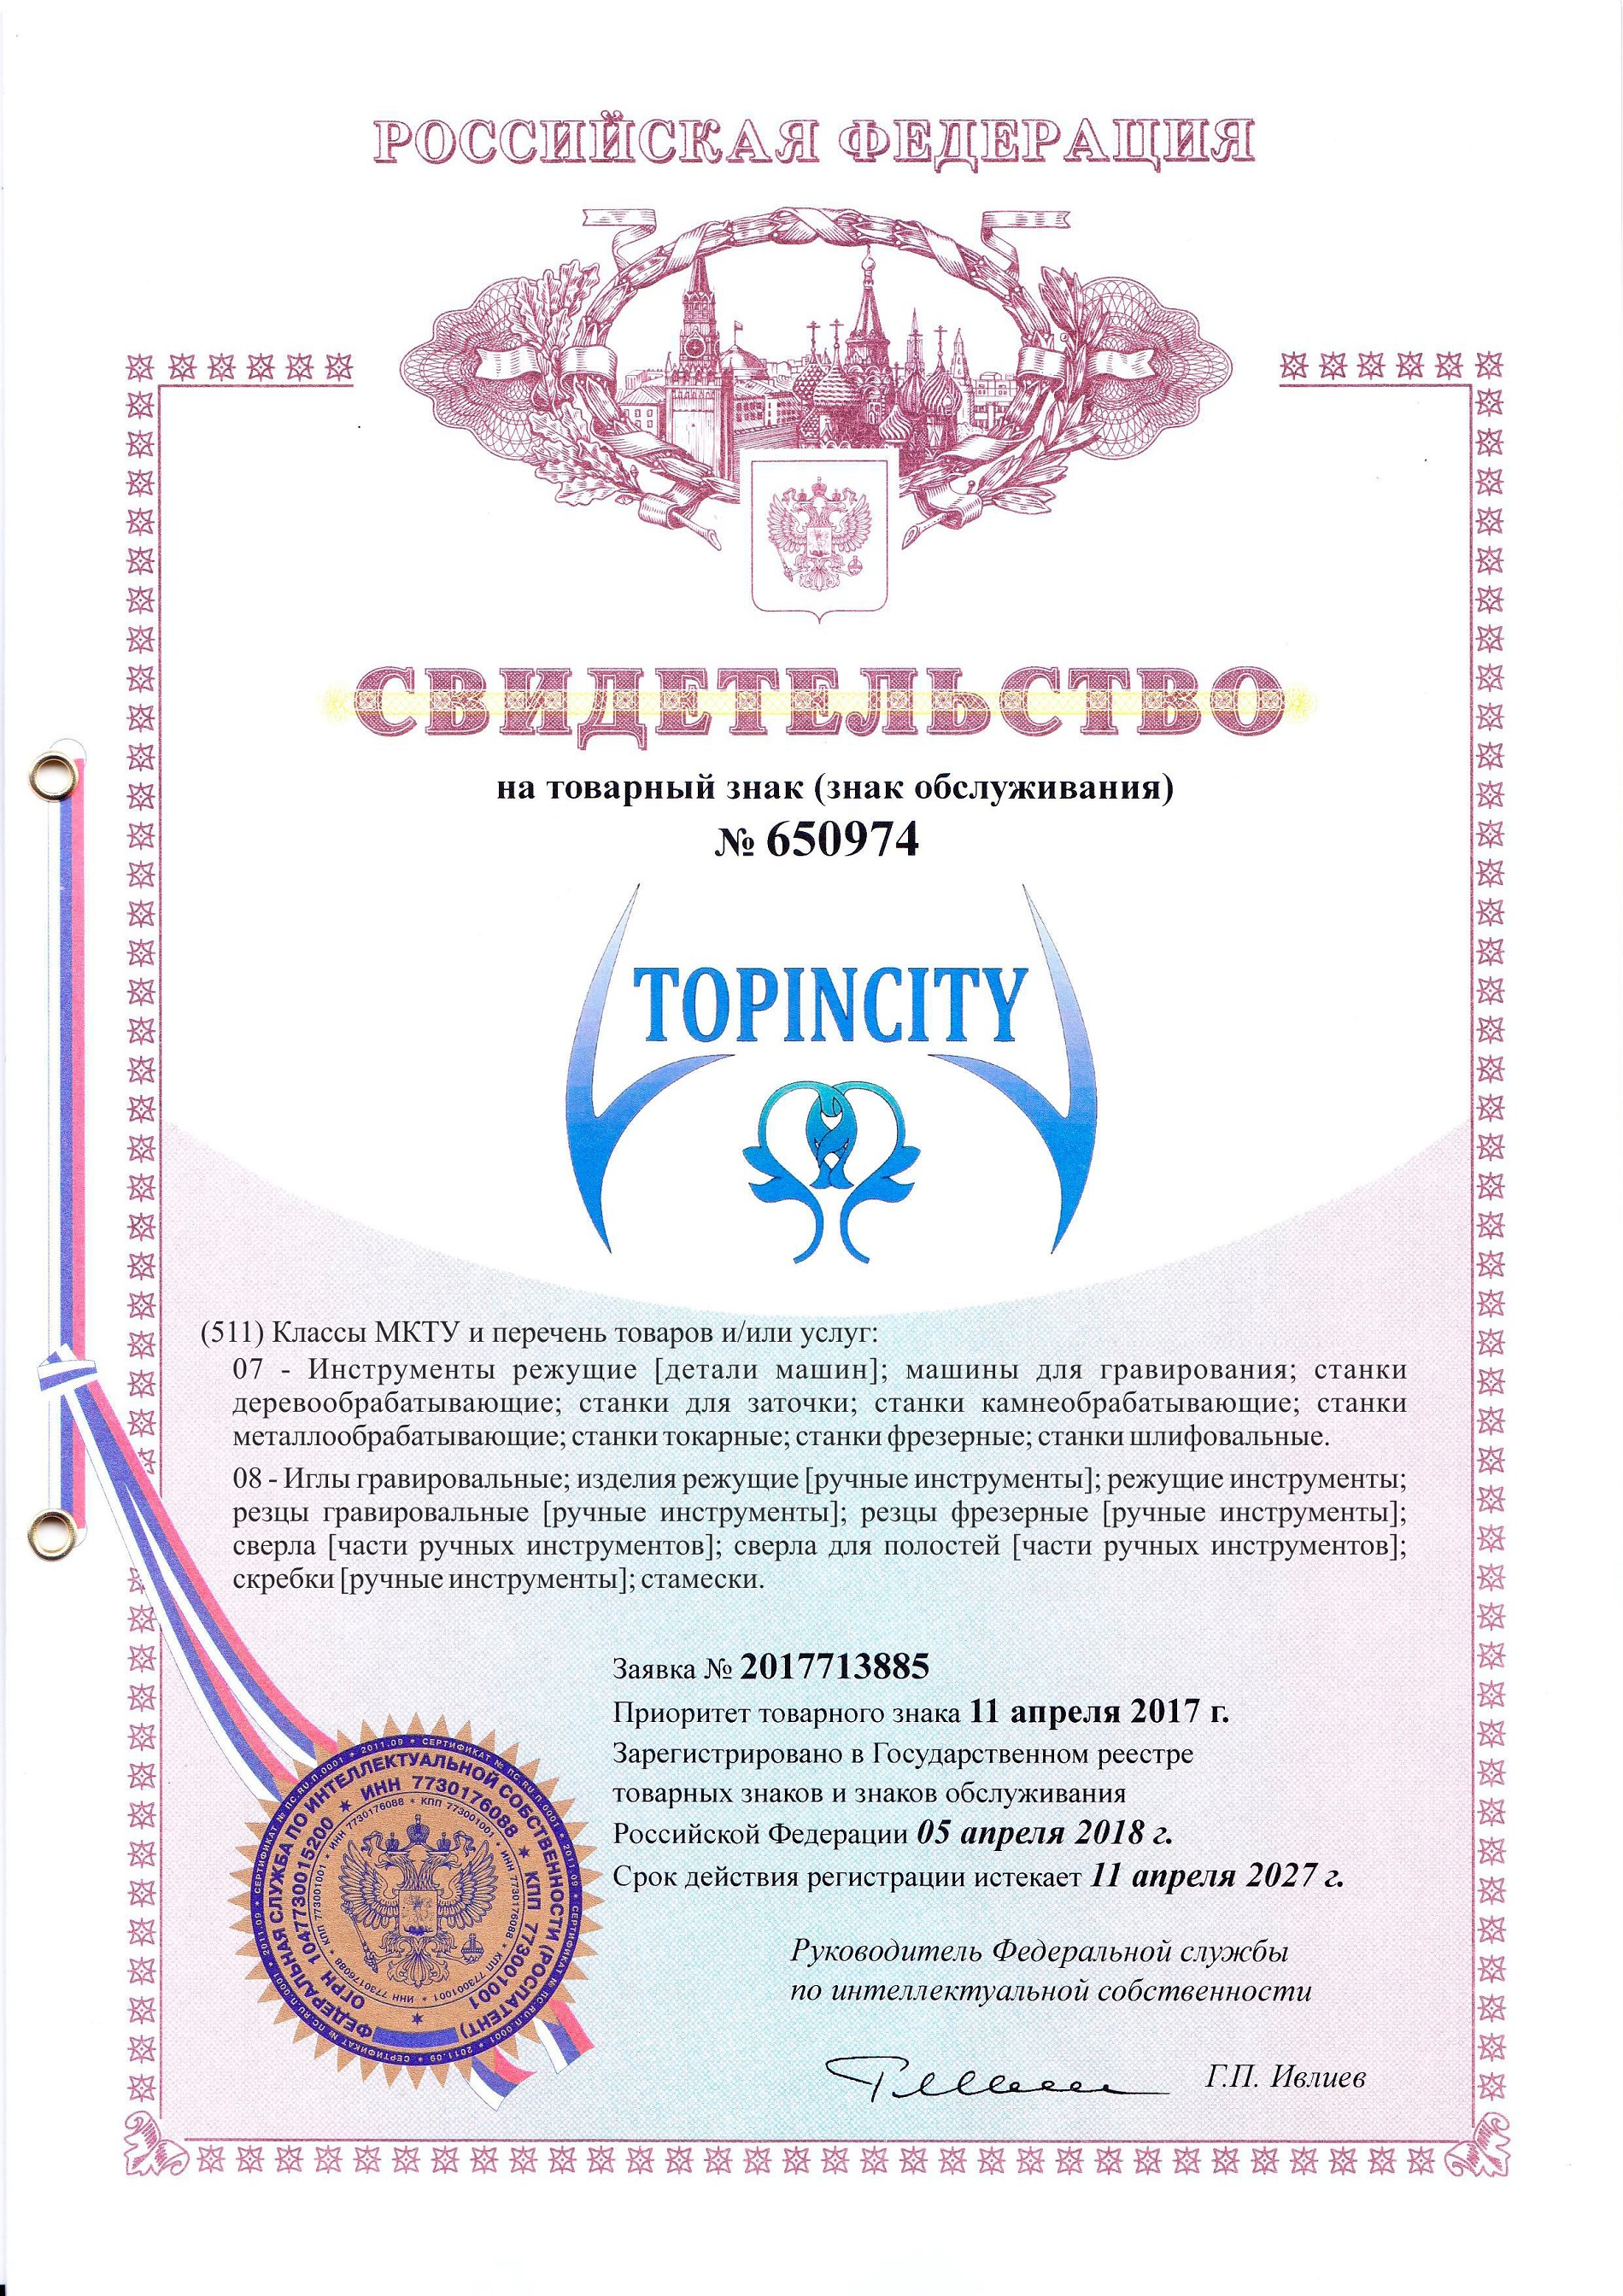 Российская торговая марка (торговый знак) TOPINCITY или ТОПИНСИТИ